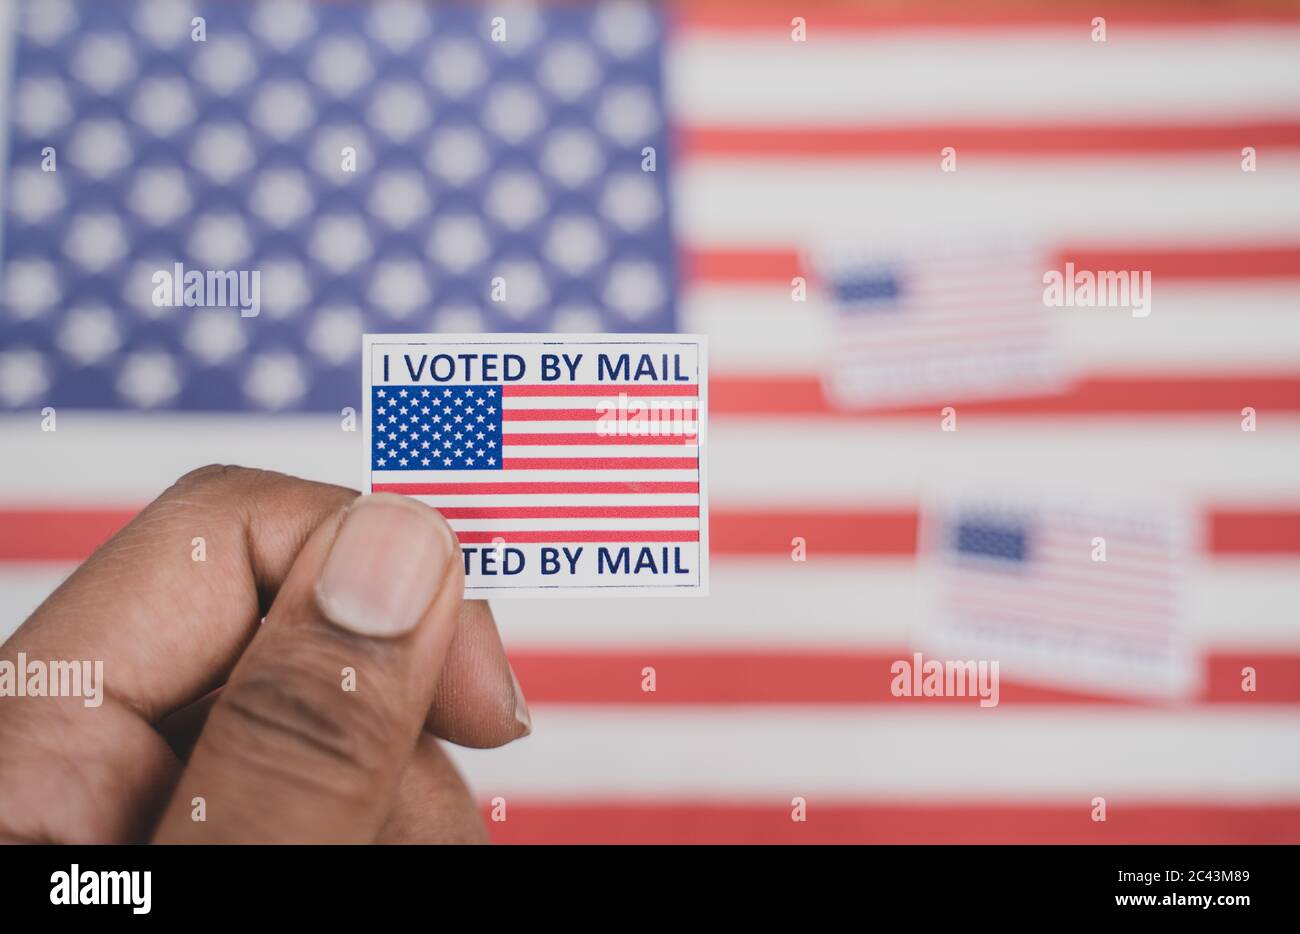 Halten Ich stimmte meine Mail-Aufkleber in Händen mit US-Flagge als Hintergrund - Konzept der per Post während der Wahl abgestimmt Stockfoto